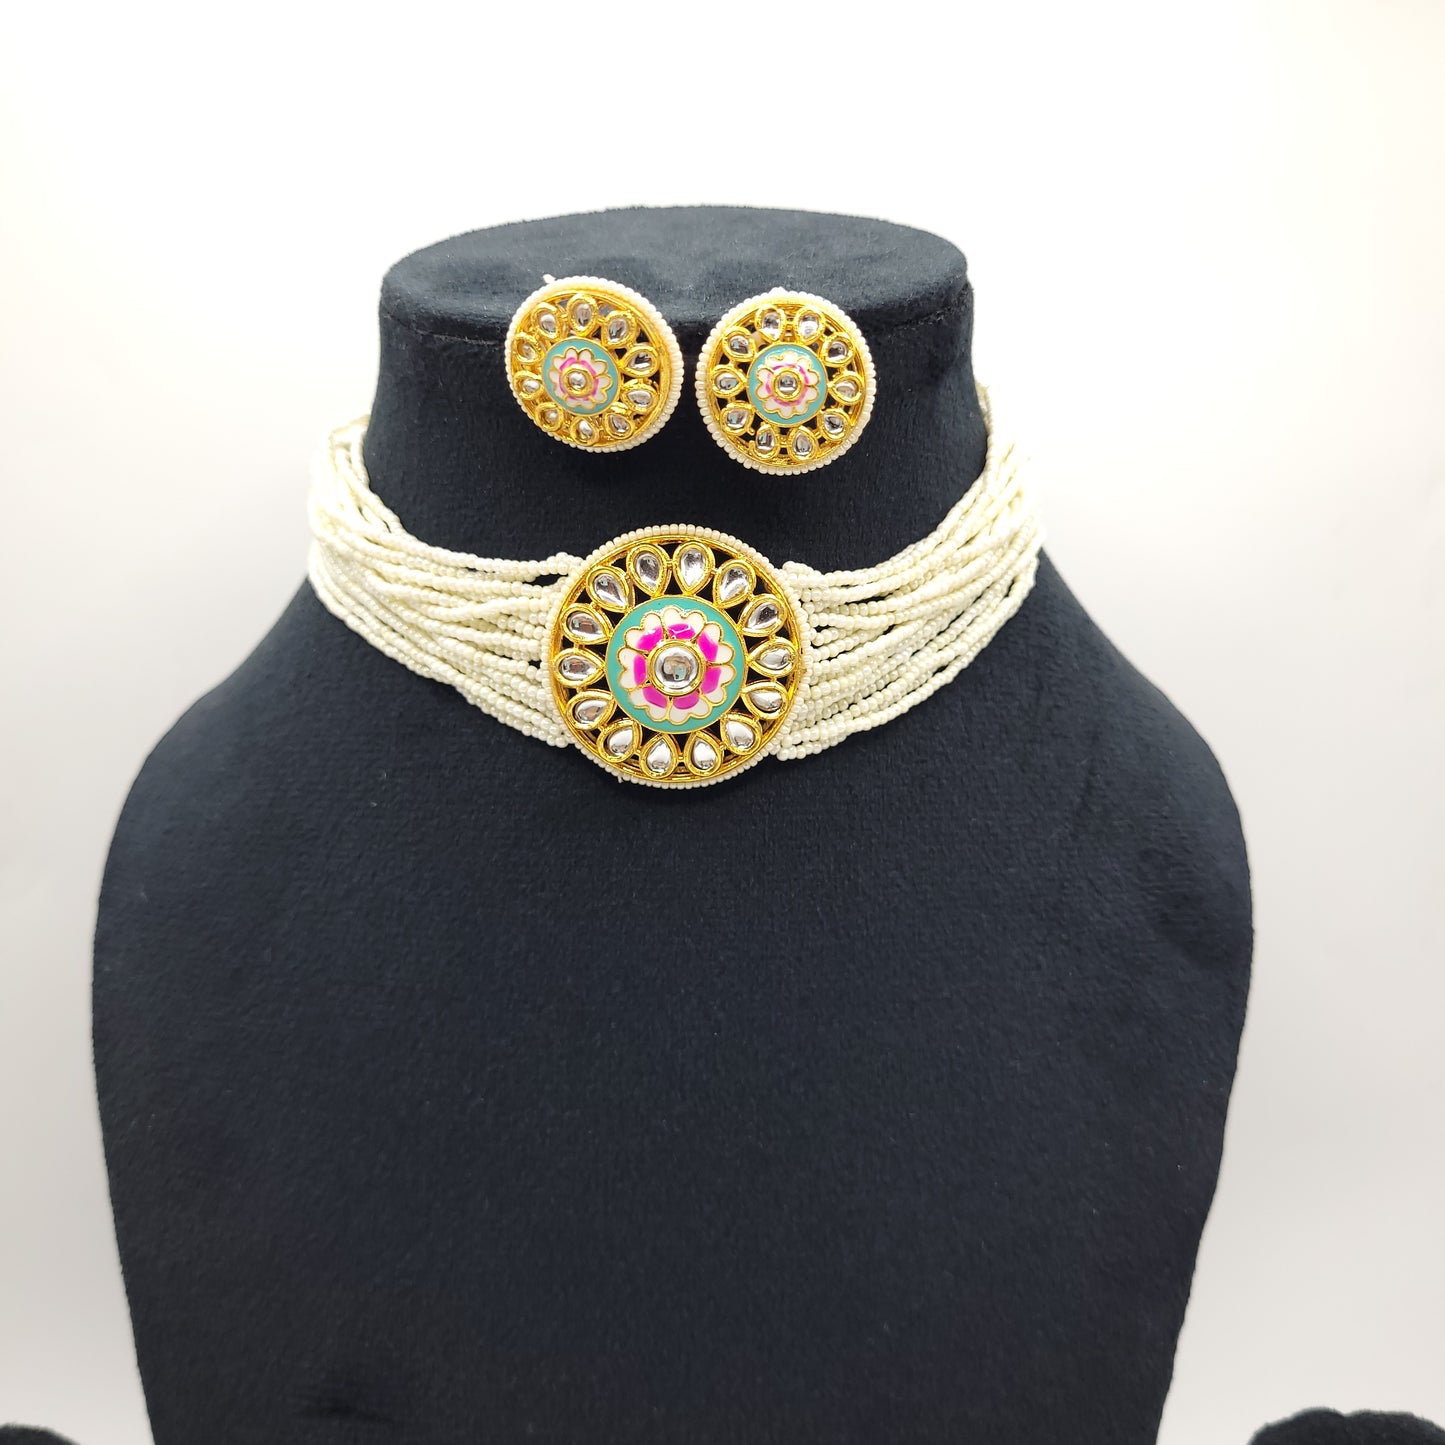 Beautiful Kundan Choker Necklace with Multiple Small Beads